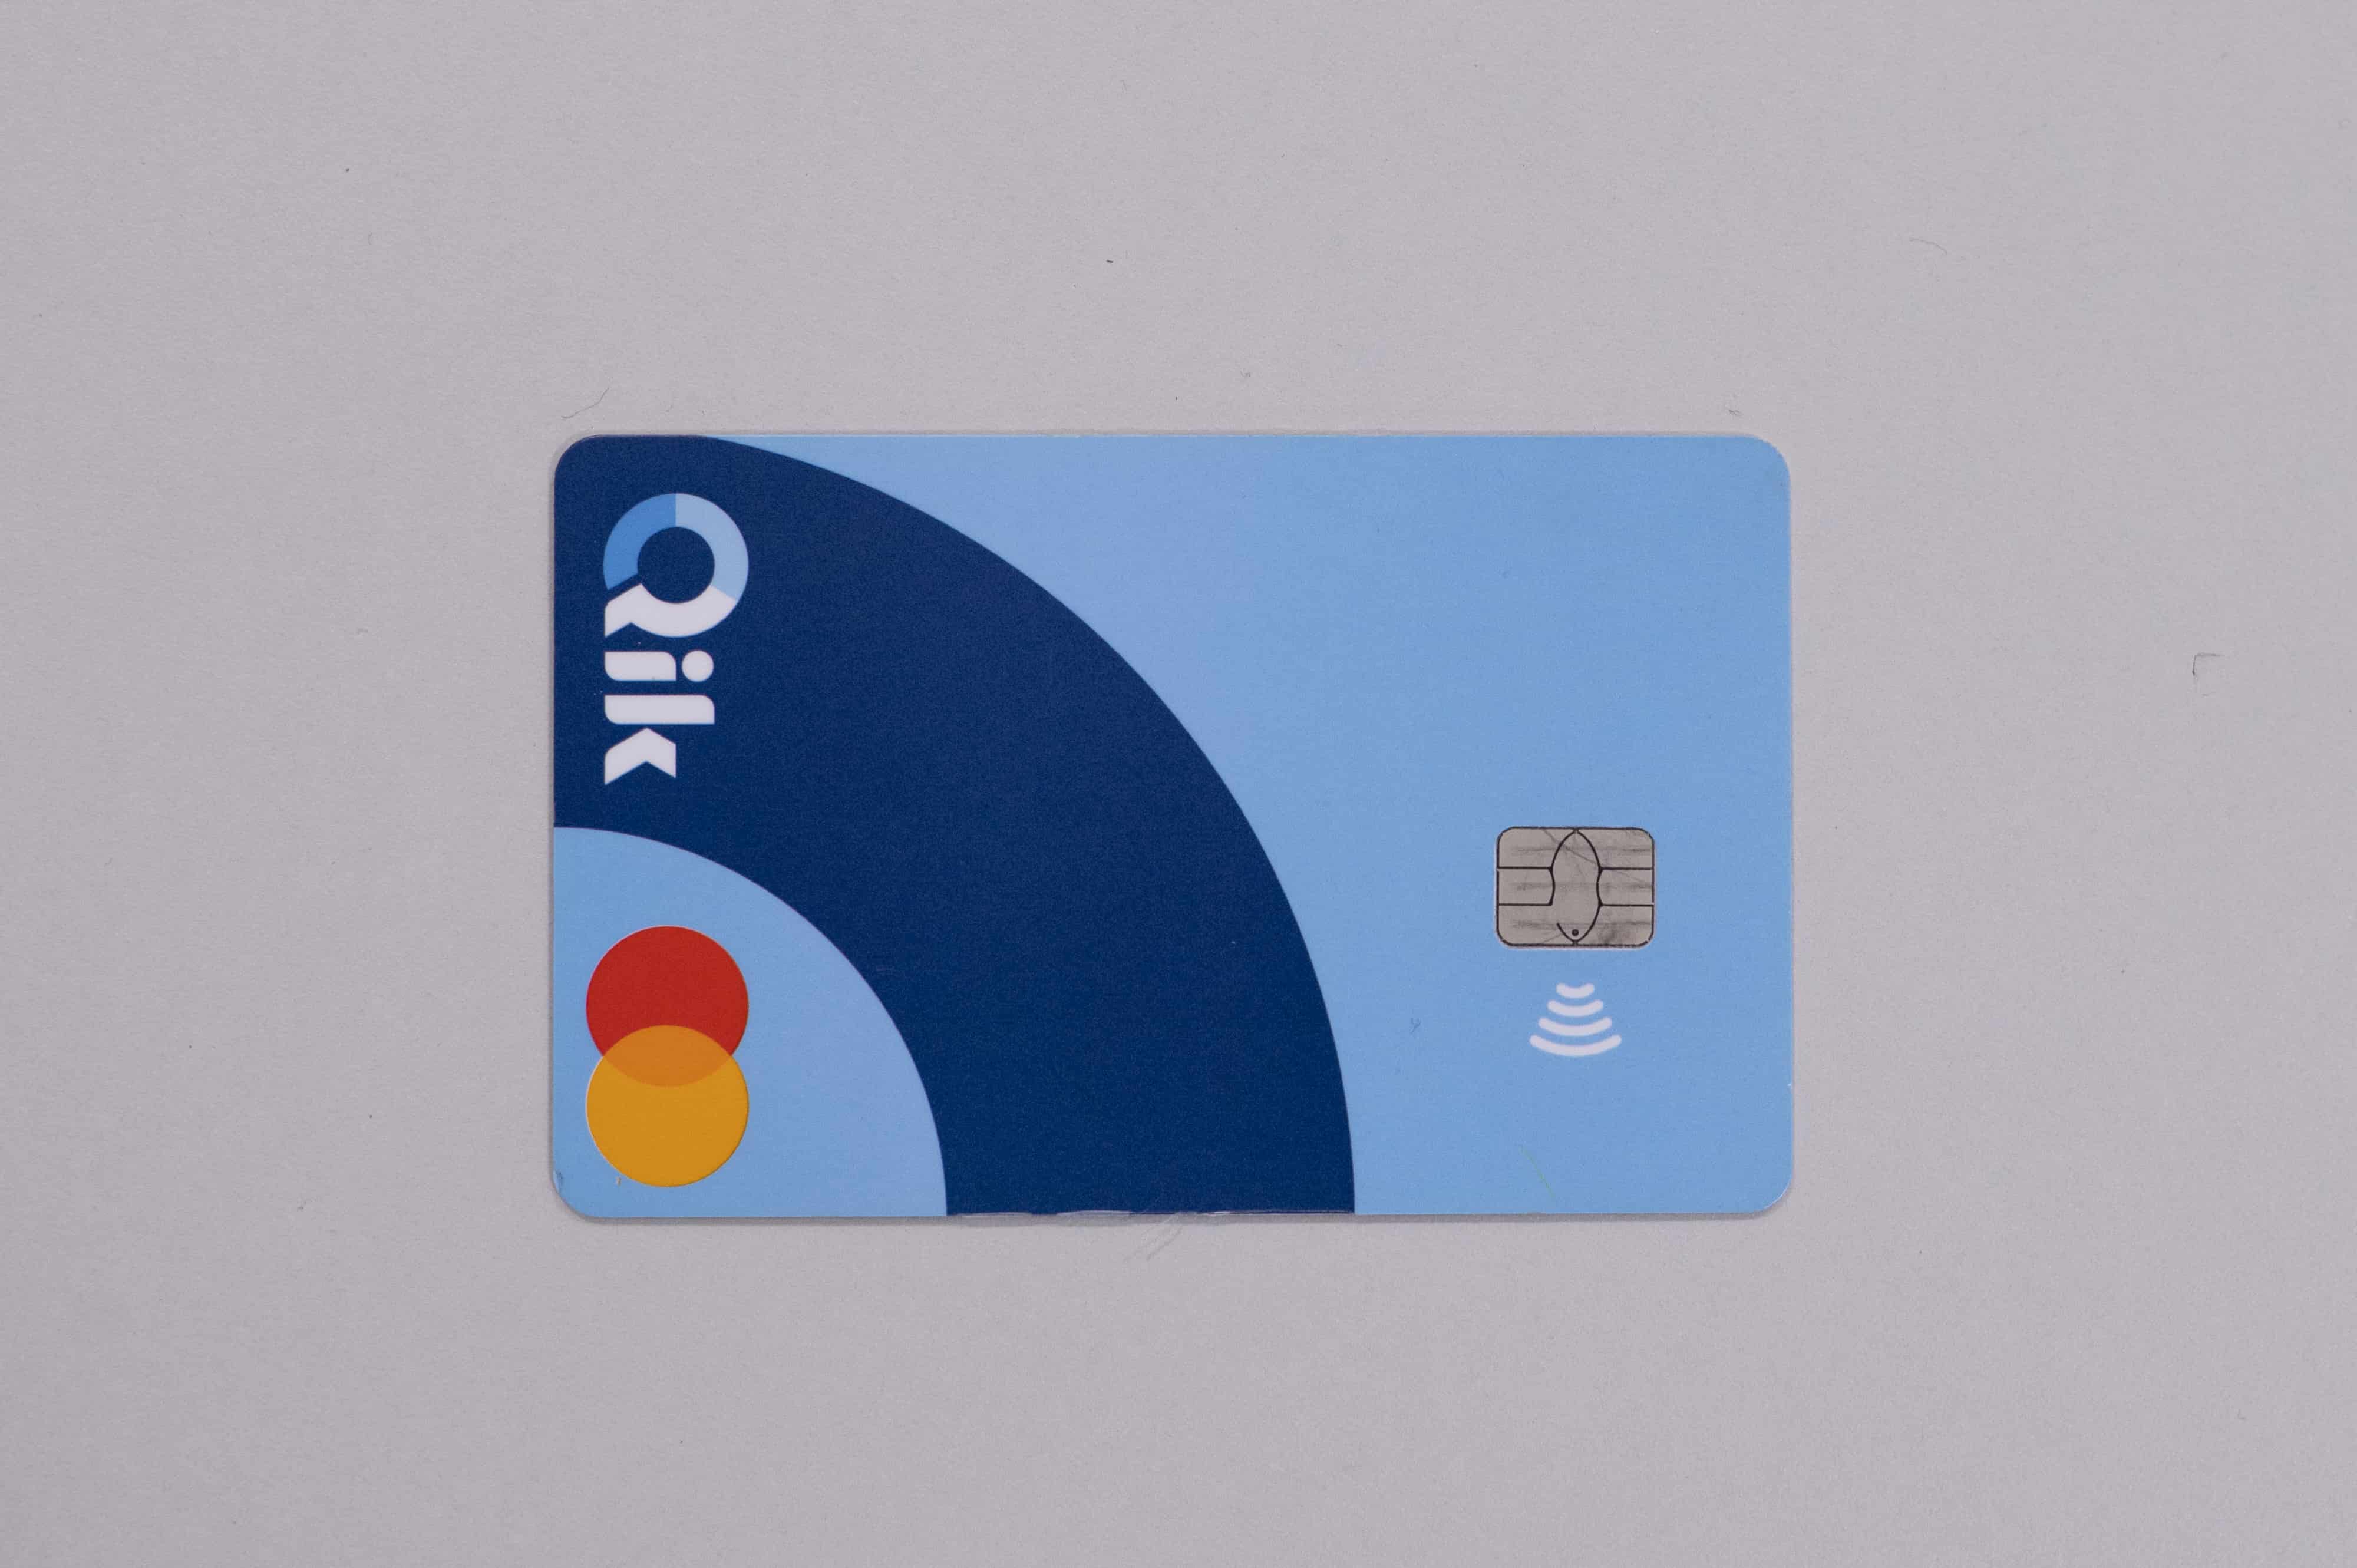 La tarjeta de crédito no tiene ningún tipo de numeración, como mecanismo de seguridad.